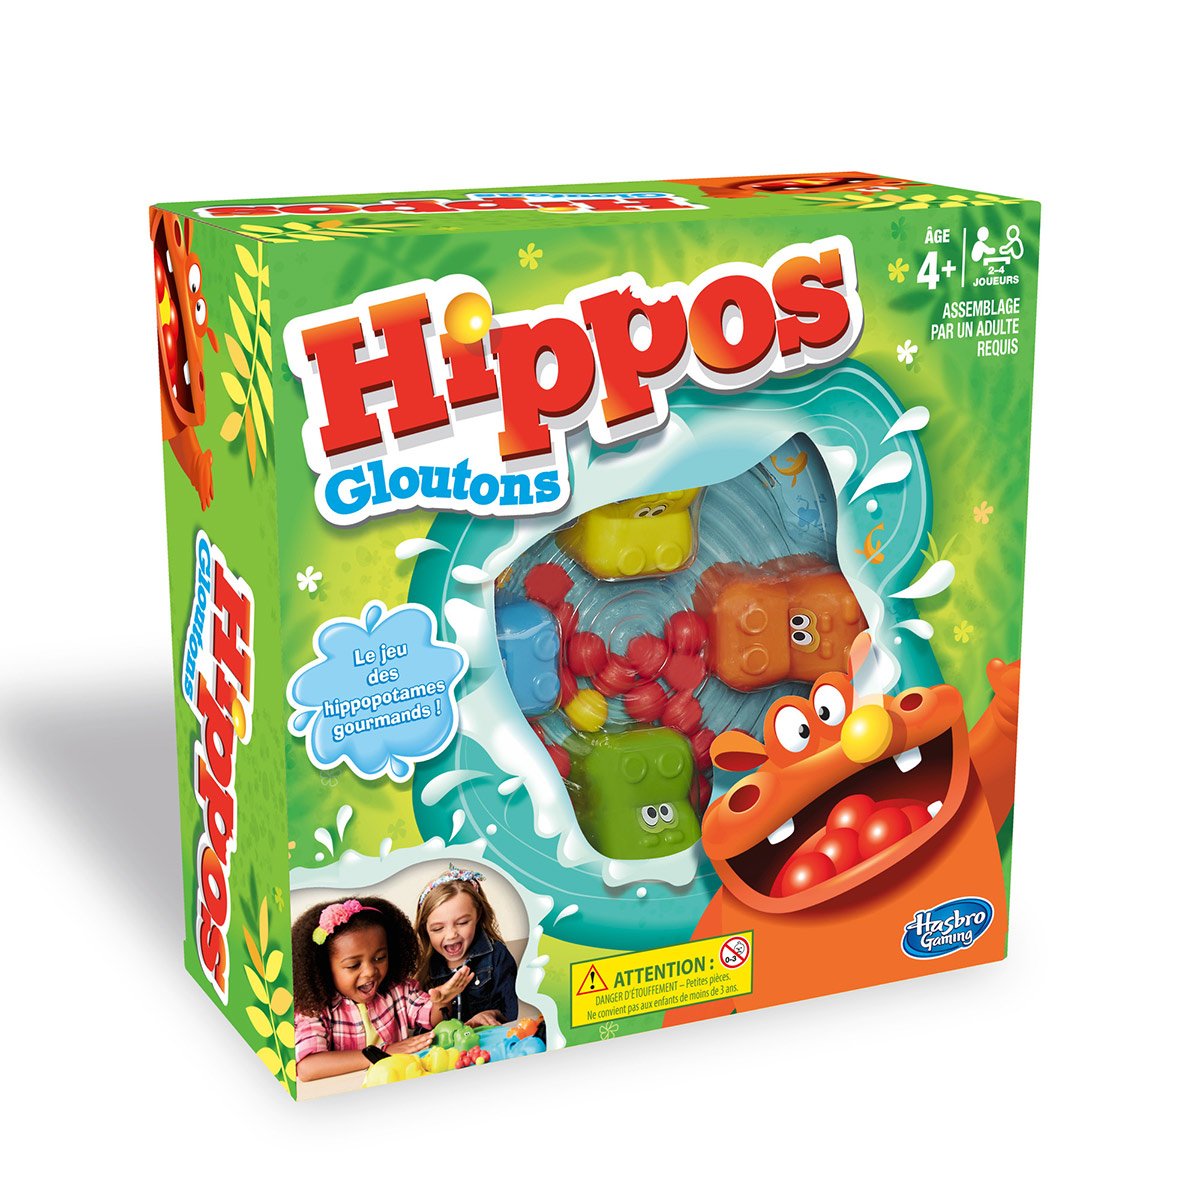 Hippos glouton